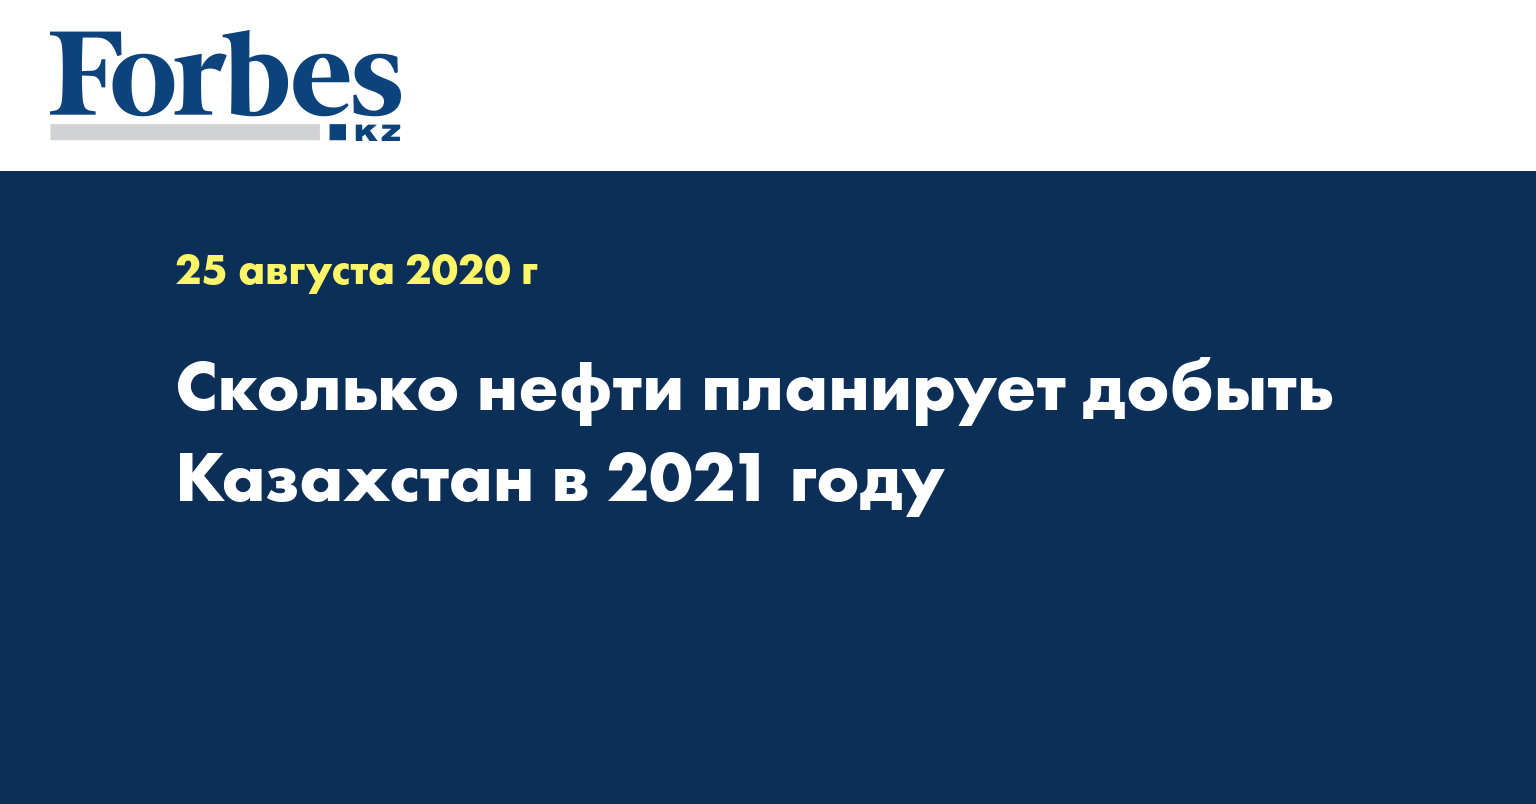 Сколько нефти планирует добыть Казахстан в 2021 году 